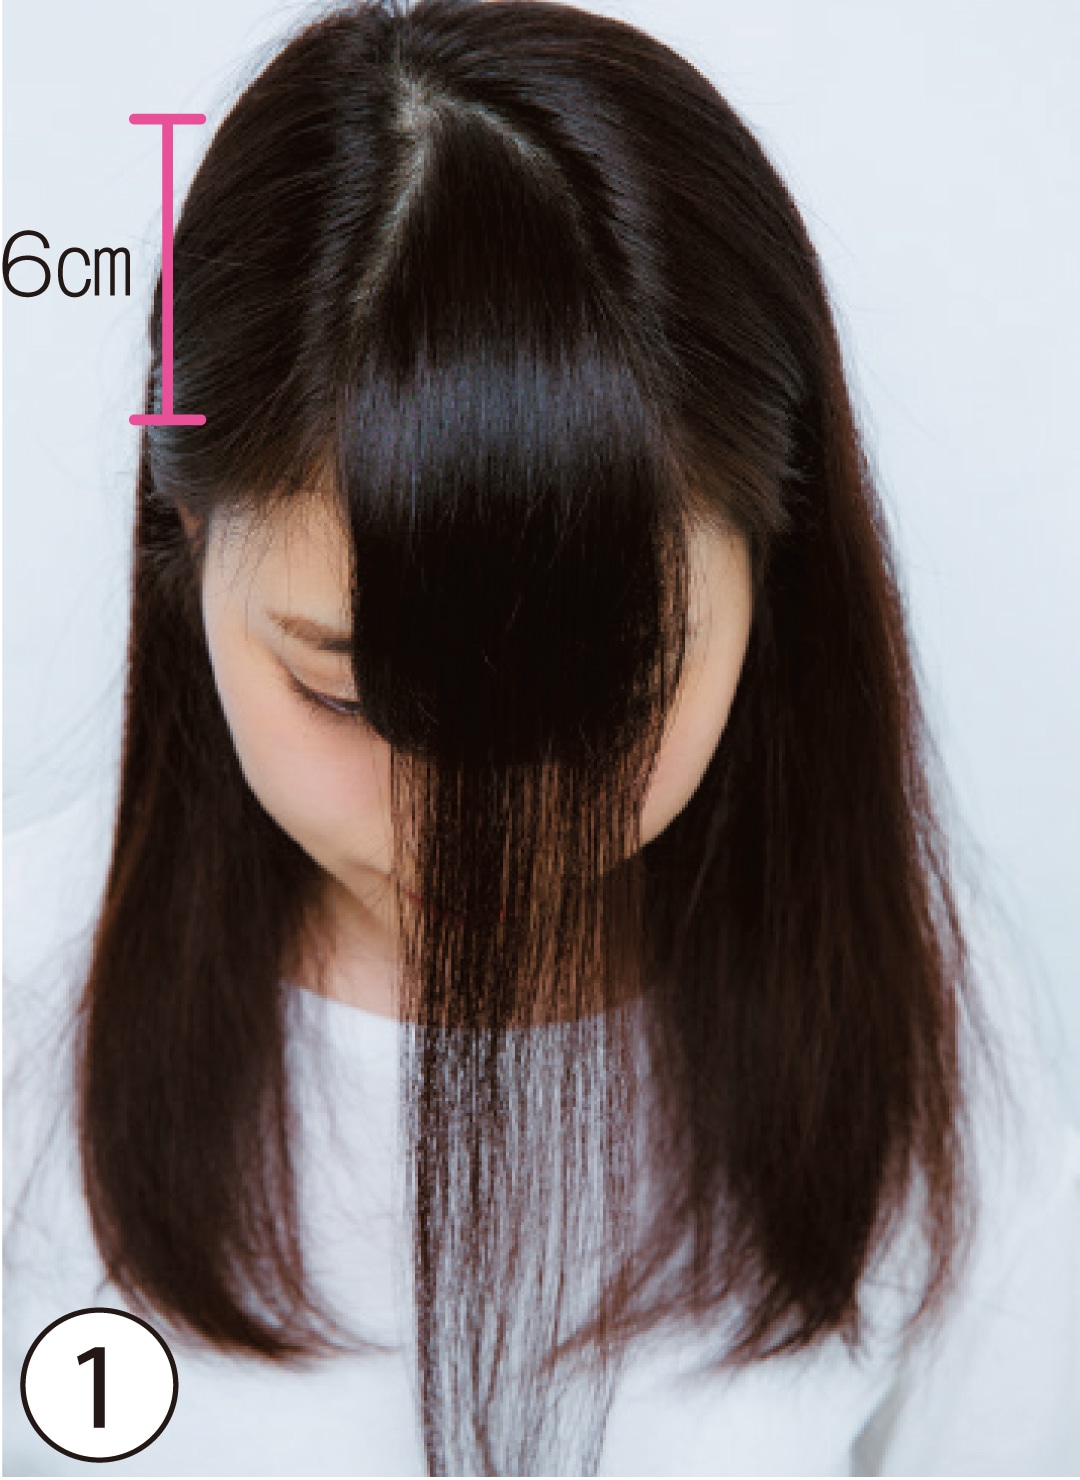 ①カットする前髪は深め×やや狭め
基本のカット①では、おでこの狭さをカバーするため、前髪の生え際から６cmくらい上の位置を頂点に設定。左右の黒目の中央の幅で前髪を作る。